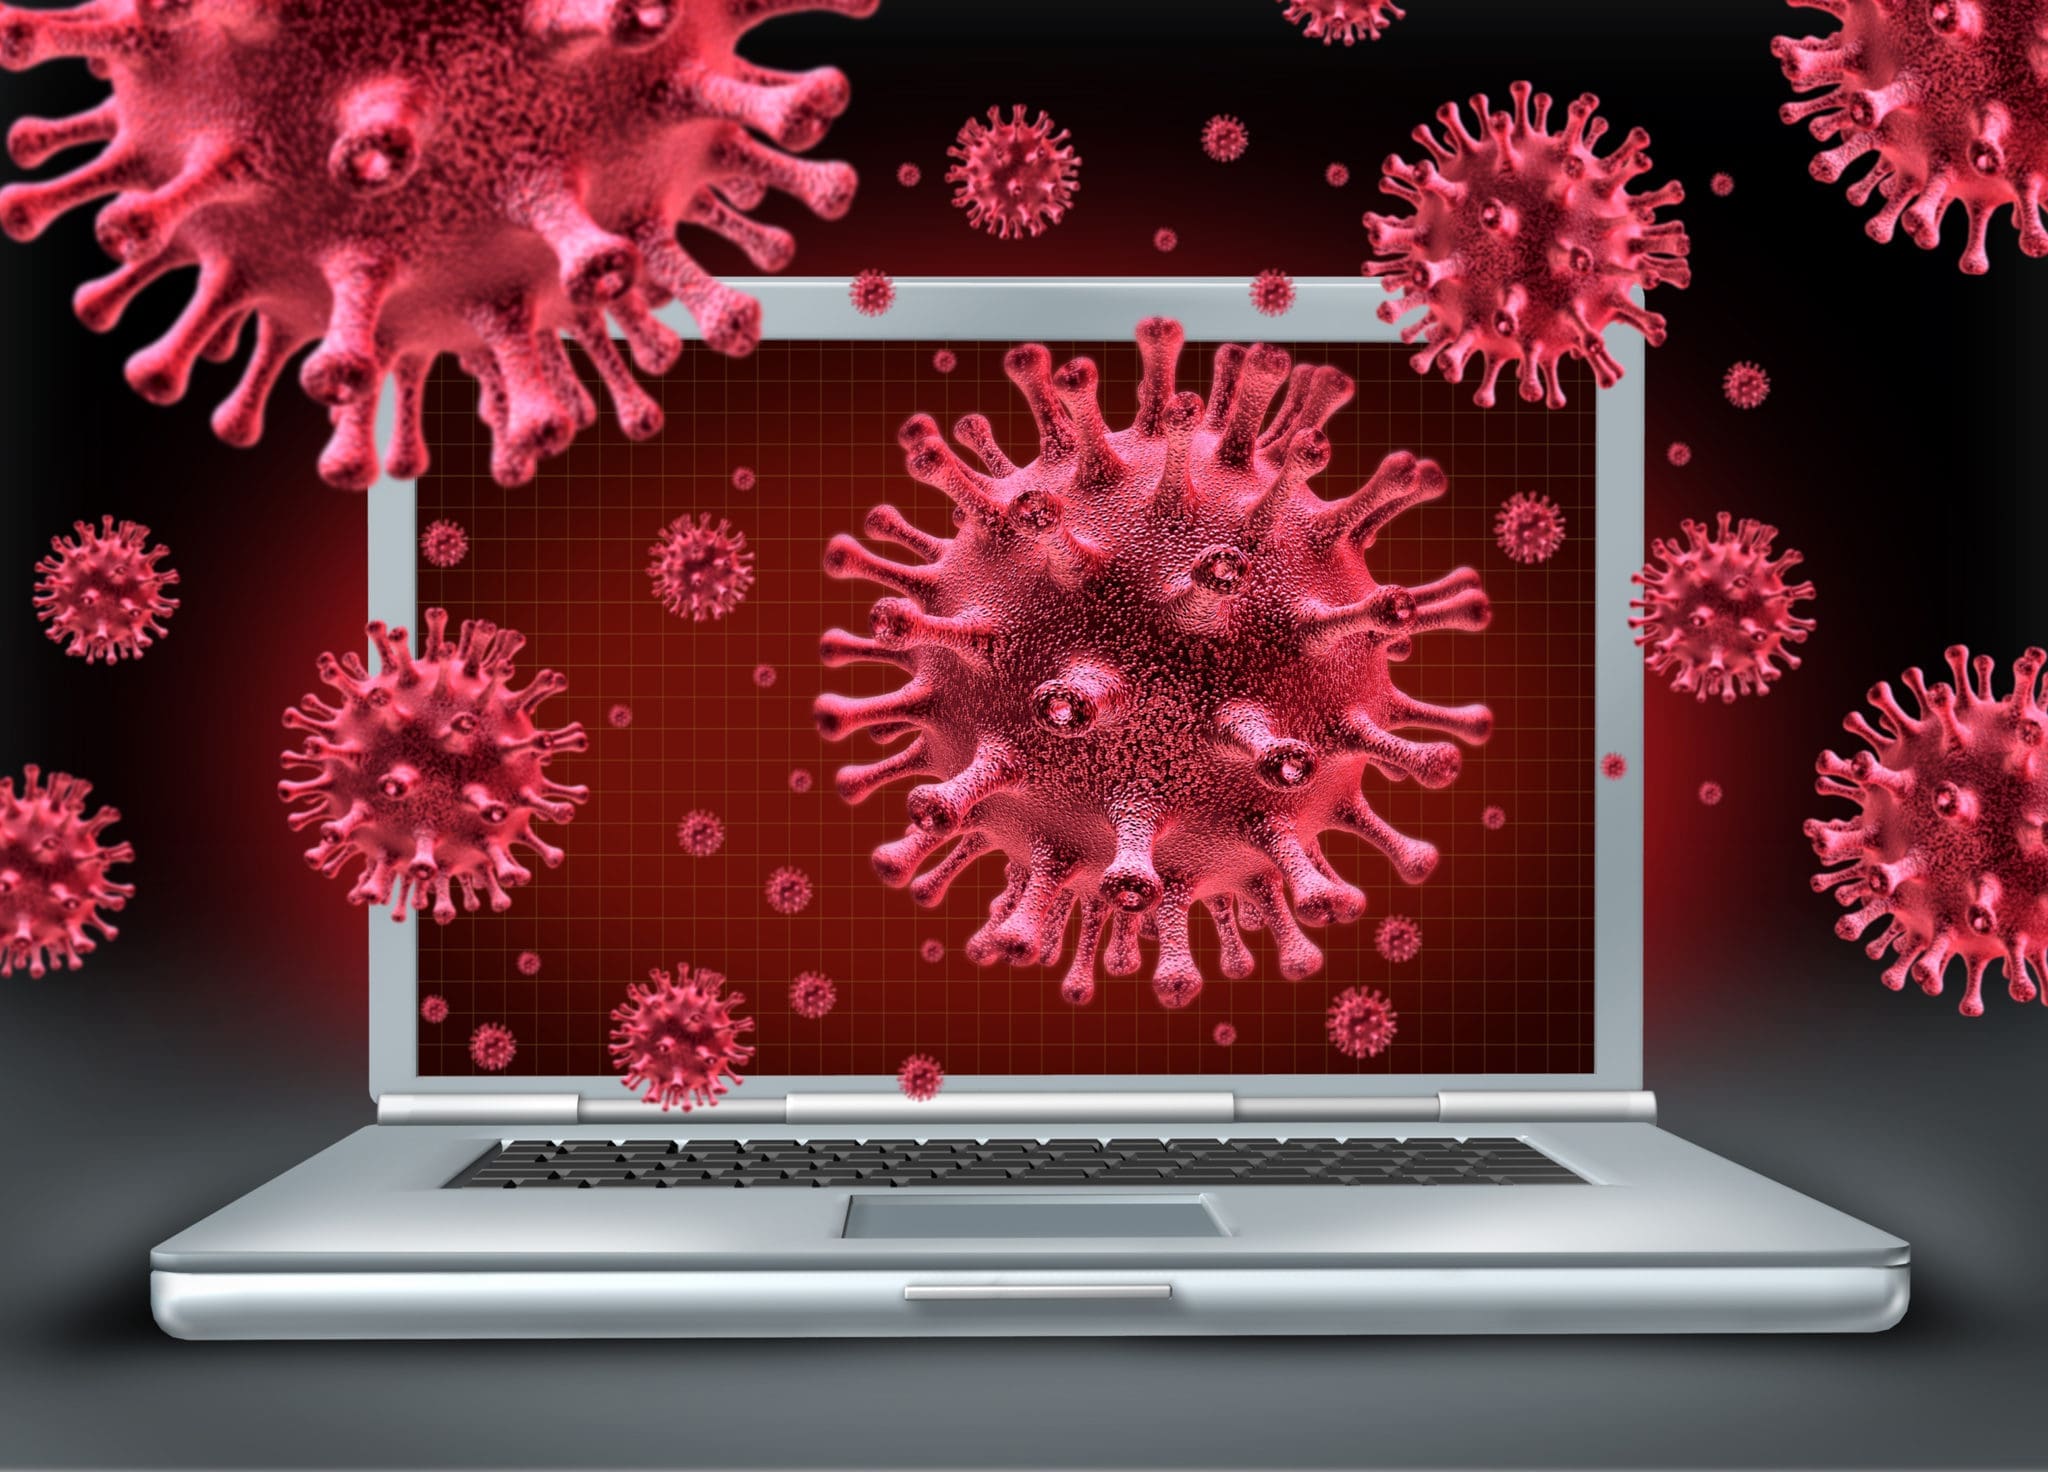 Get a virus. Компьютерные вирусы. Вирус ПК. Компьютерные вирусы картинки. Вирусы в интернете.